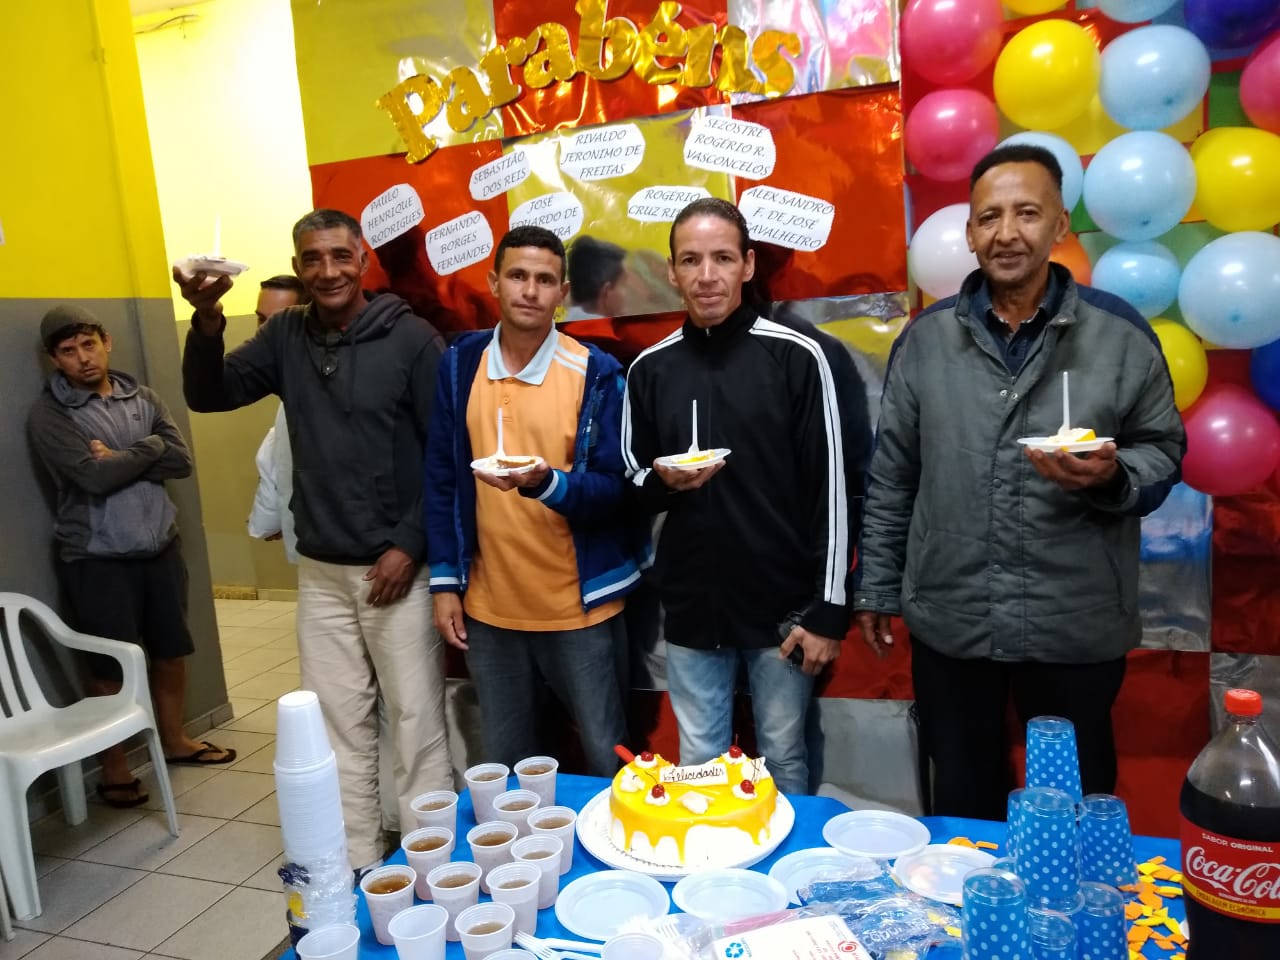 Quatro homens sorrindo para a foto, seguram pratos com bolo e estão em frente a mesa de aniversário onde está o bolo, copos, pratos e refrigerante. Ao fundo, painel de bexigas coloridas. 